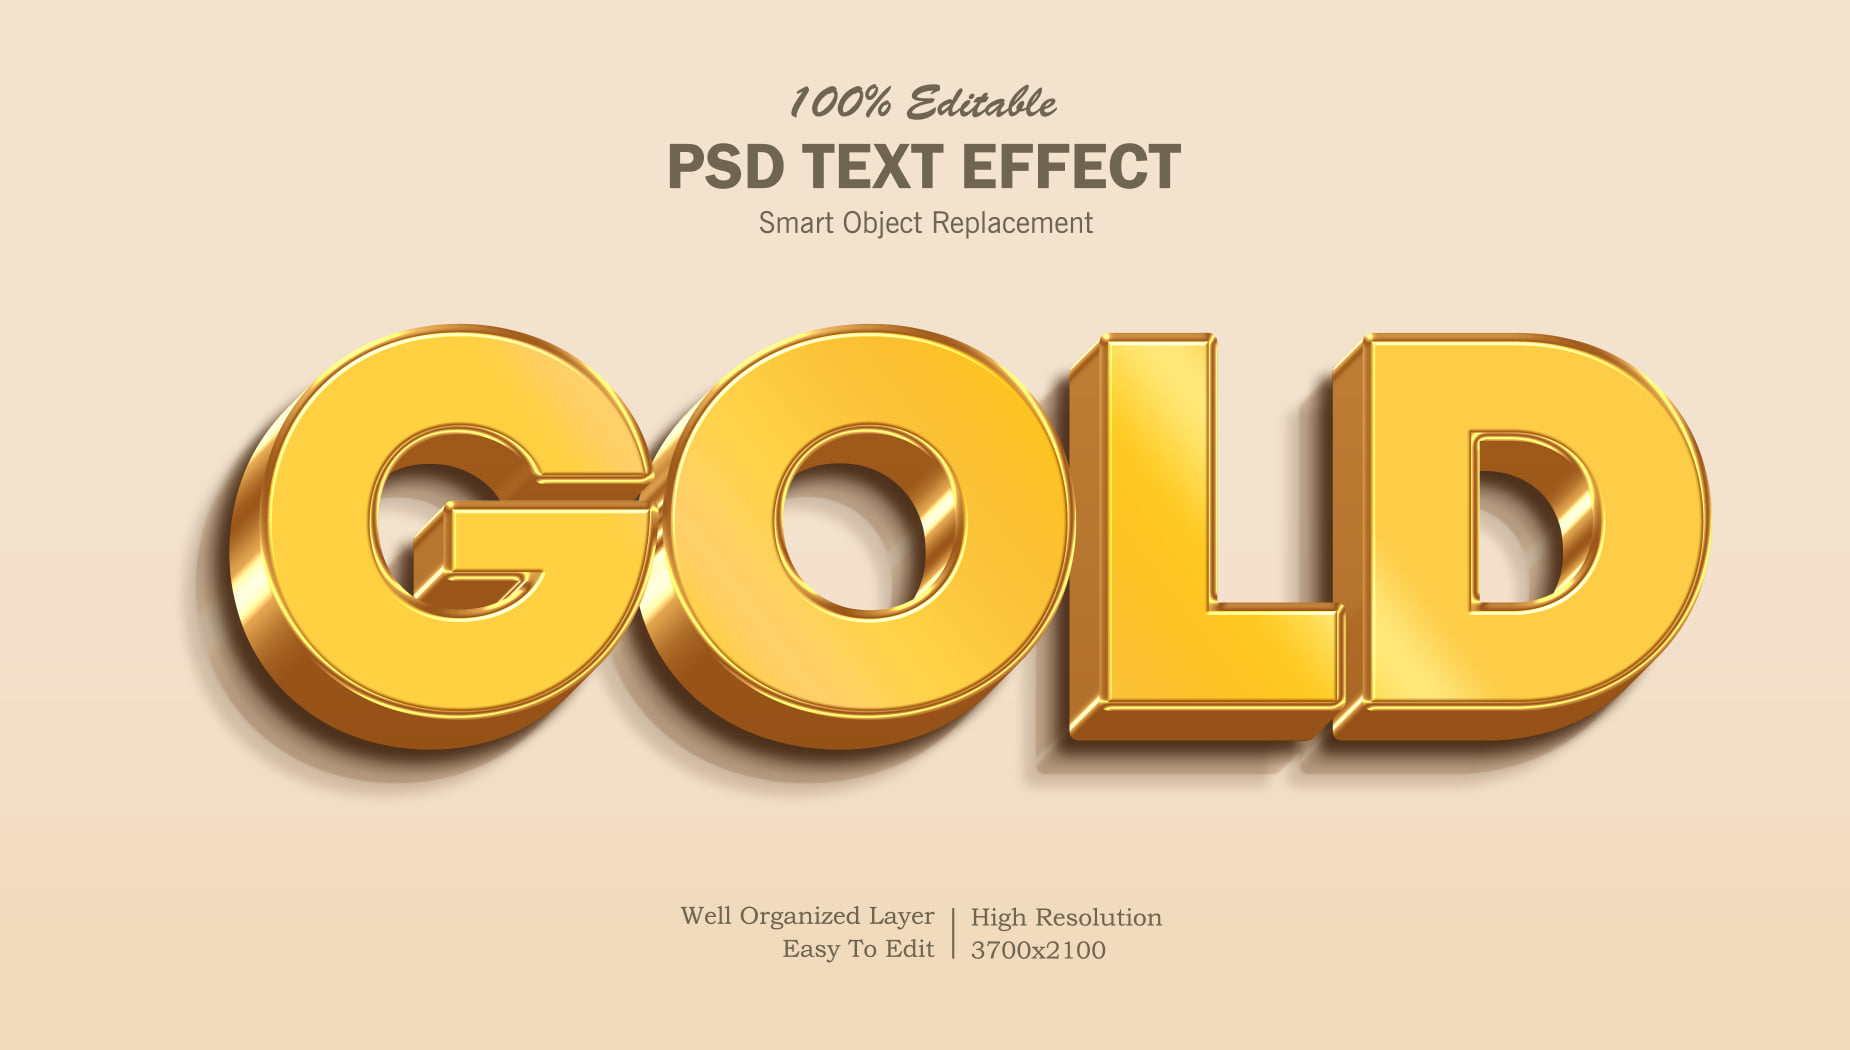 File PSD chữ hiệu ứng vàng gold màu đen: Với file PSD chữ hiệu ứng vàng gold màu đen, bạn sẽ không còn phải lo lắng về việc không đủ thời gian để tạo ra một thiết kế tuyệt vời cho công việc của mình nữa. Một thiết kế đầy đặc sắc, được trang trí bằng chữ hiệu ứng vàng gold quyến rũ và màu đen đầy tinh tế, giúp bạn nhanh chóng hoàn thành các tác vụ. Nhấn \'xem ảnh\' để khám phá các tính năng nổi bật của file PSD này!